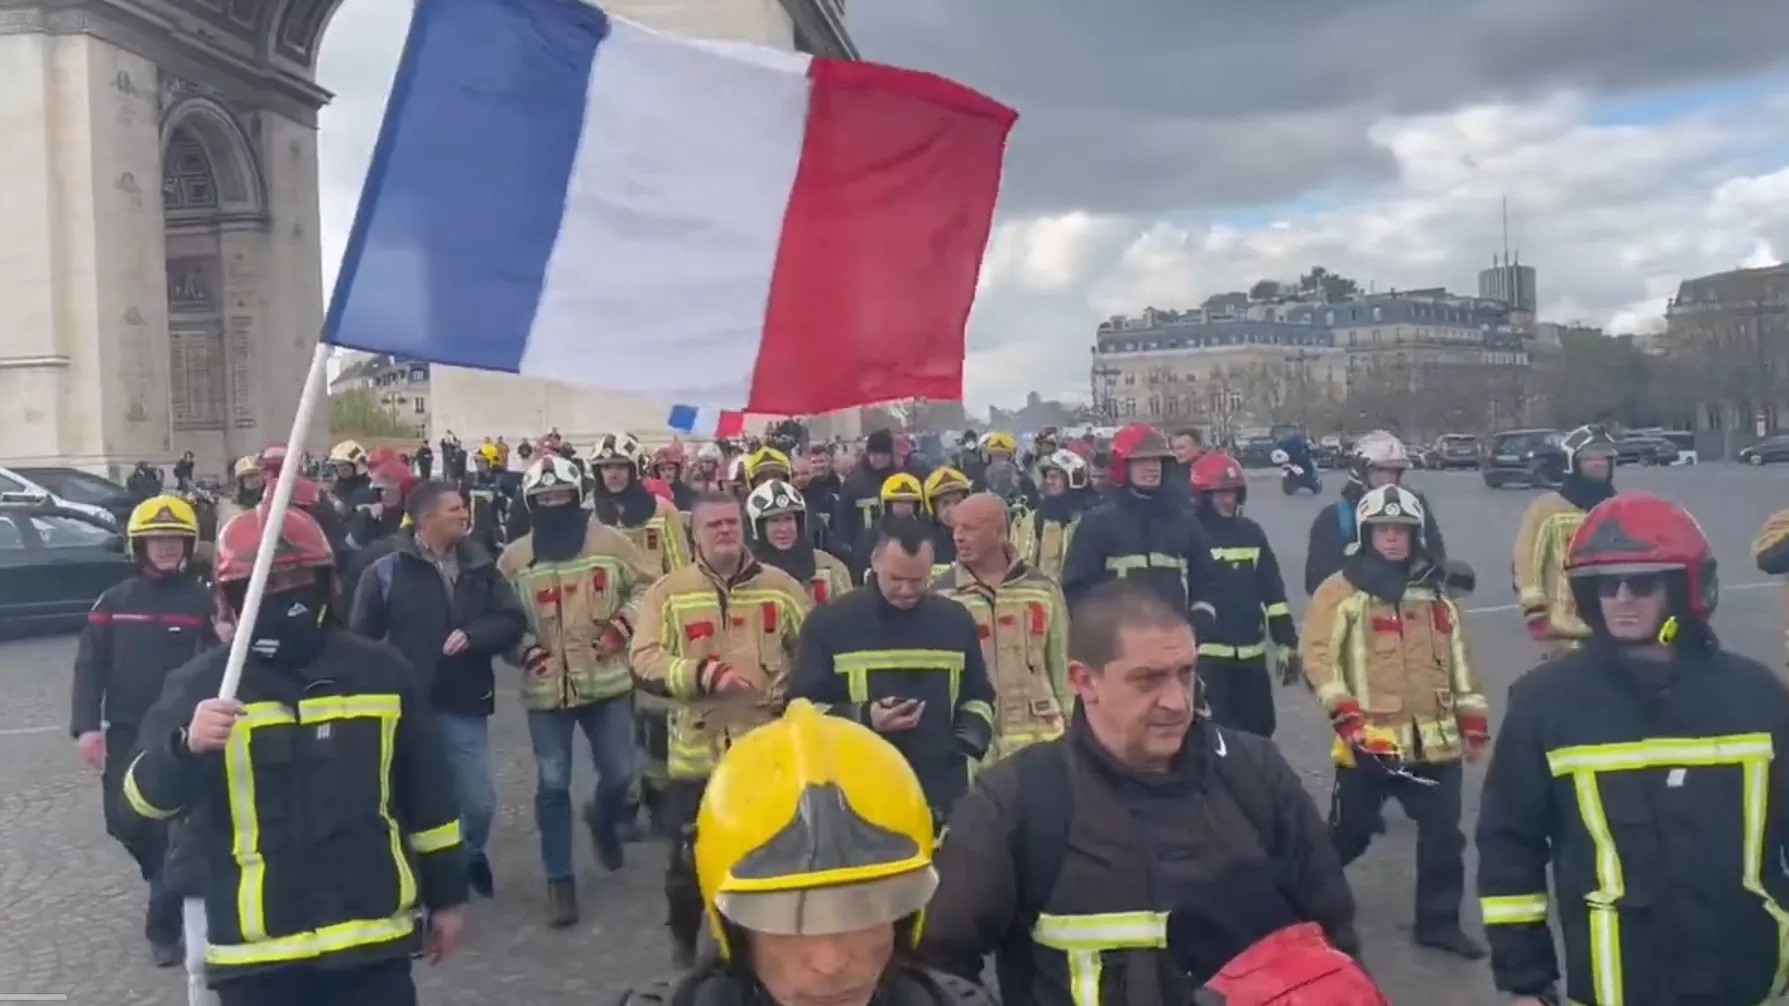 ՏԵՍԱՆՅՈՒԹ. Ֆրանսիացի հրշեջները միացել են բողոքի ցույցին